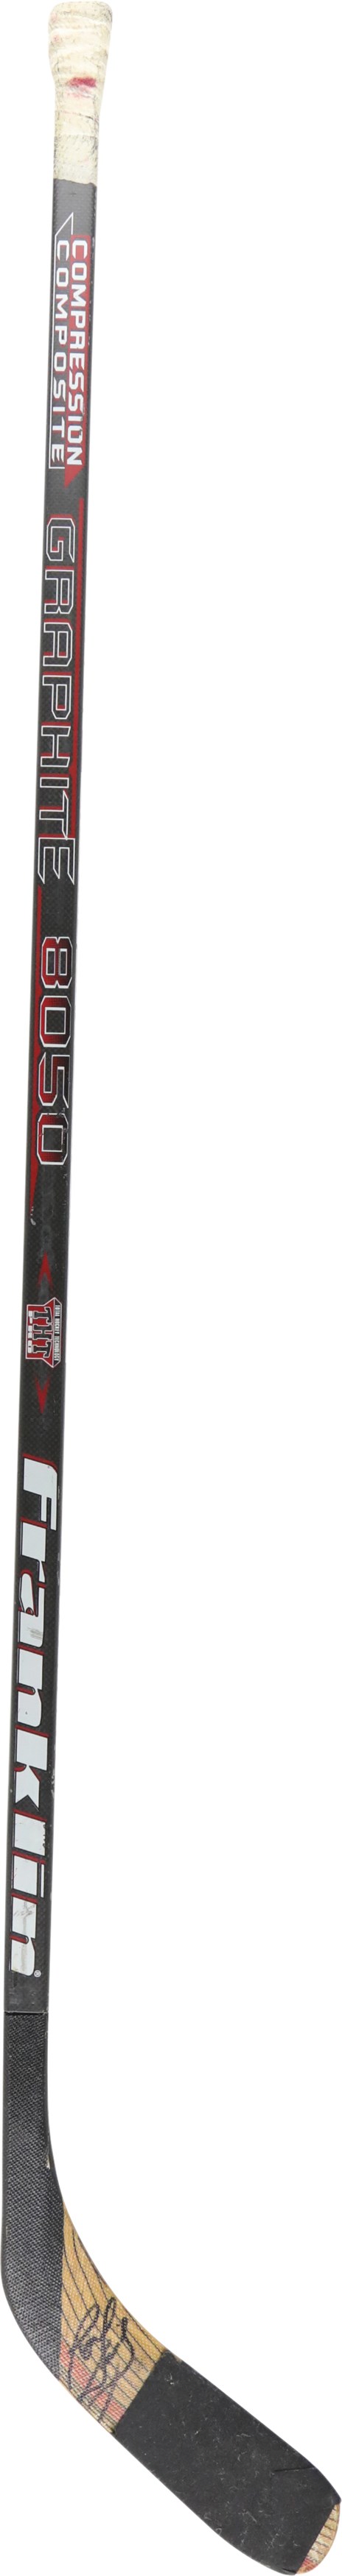 Hockey - 1998-99 Ron Francis Signed Game Used Stick (PSA)